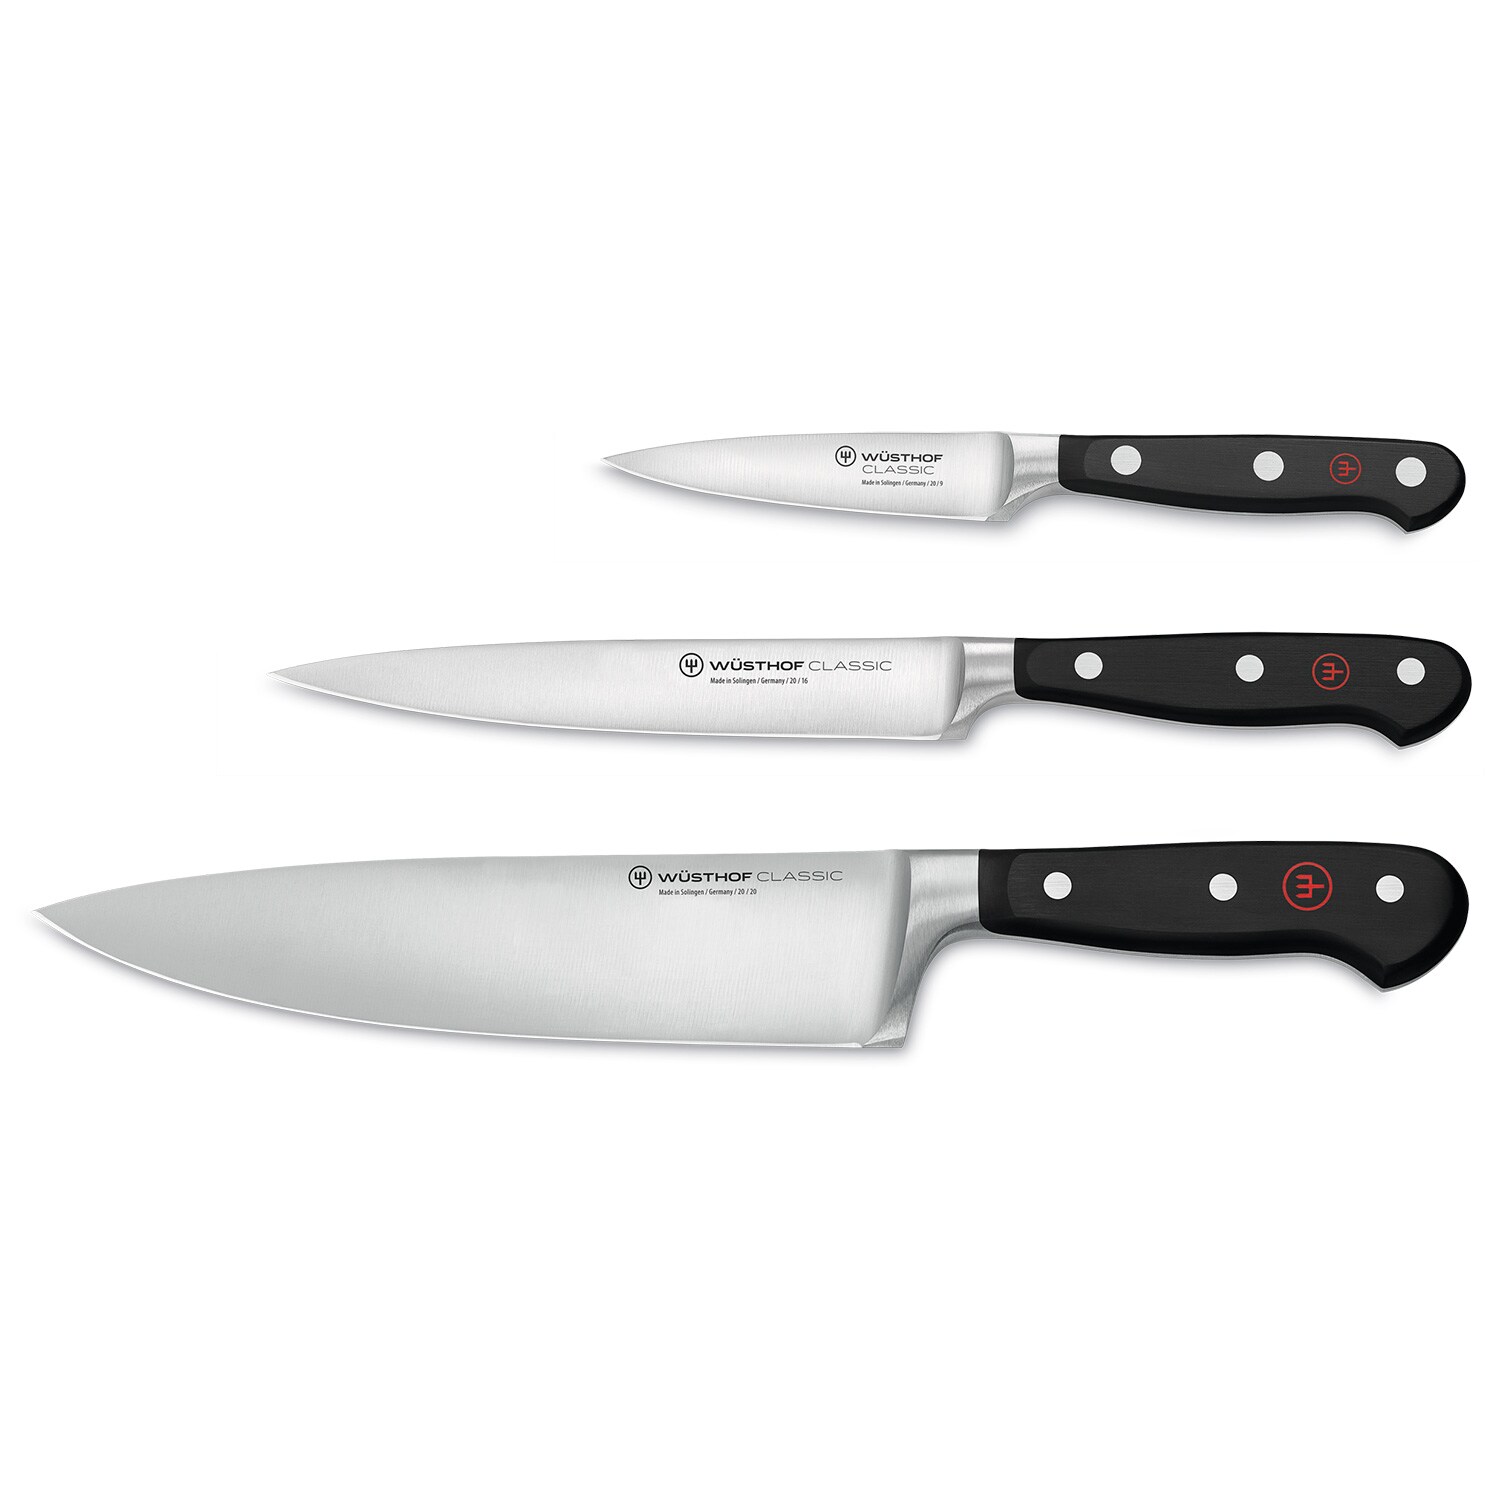 https://royaldesign.com/image/2/wusthof-classic-knife-set-3-pack-0